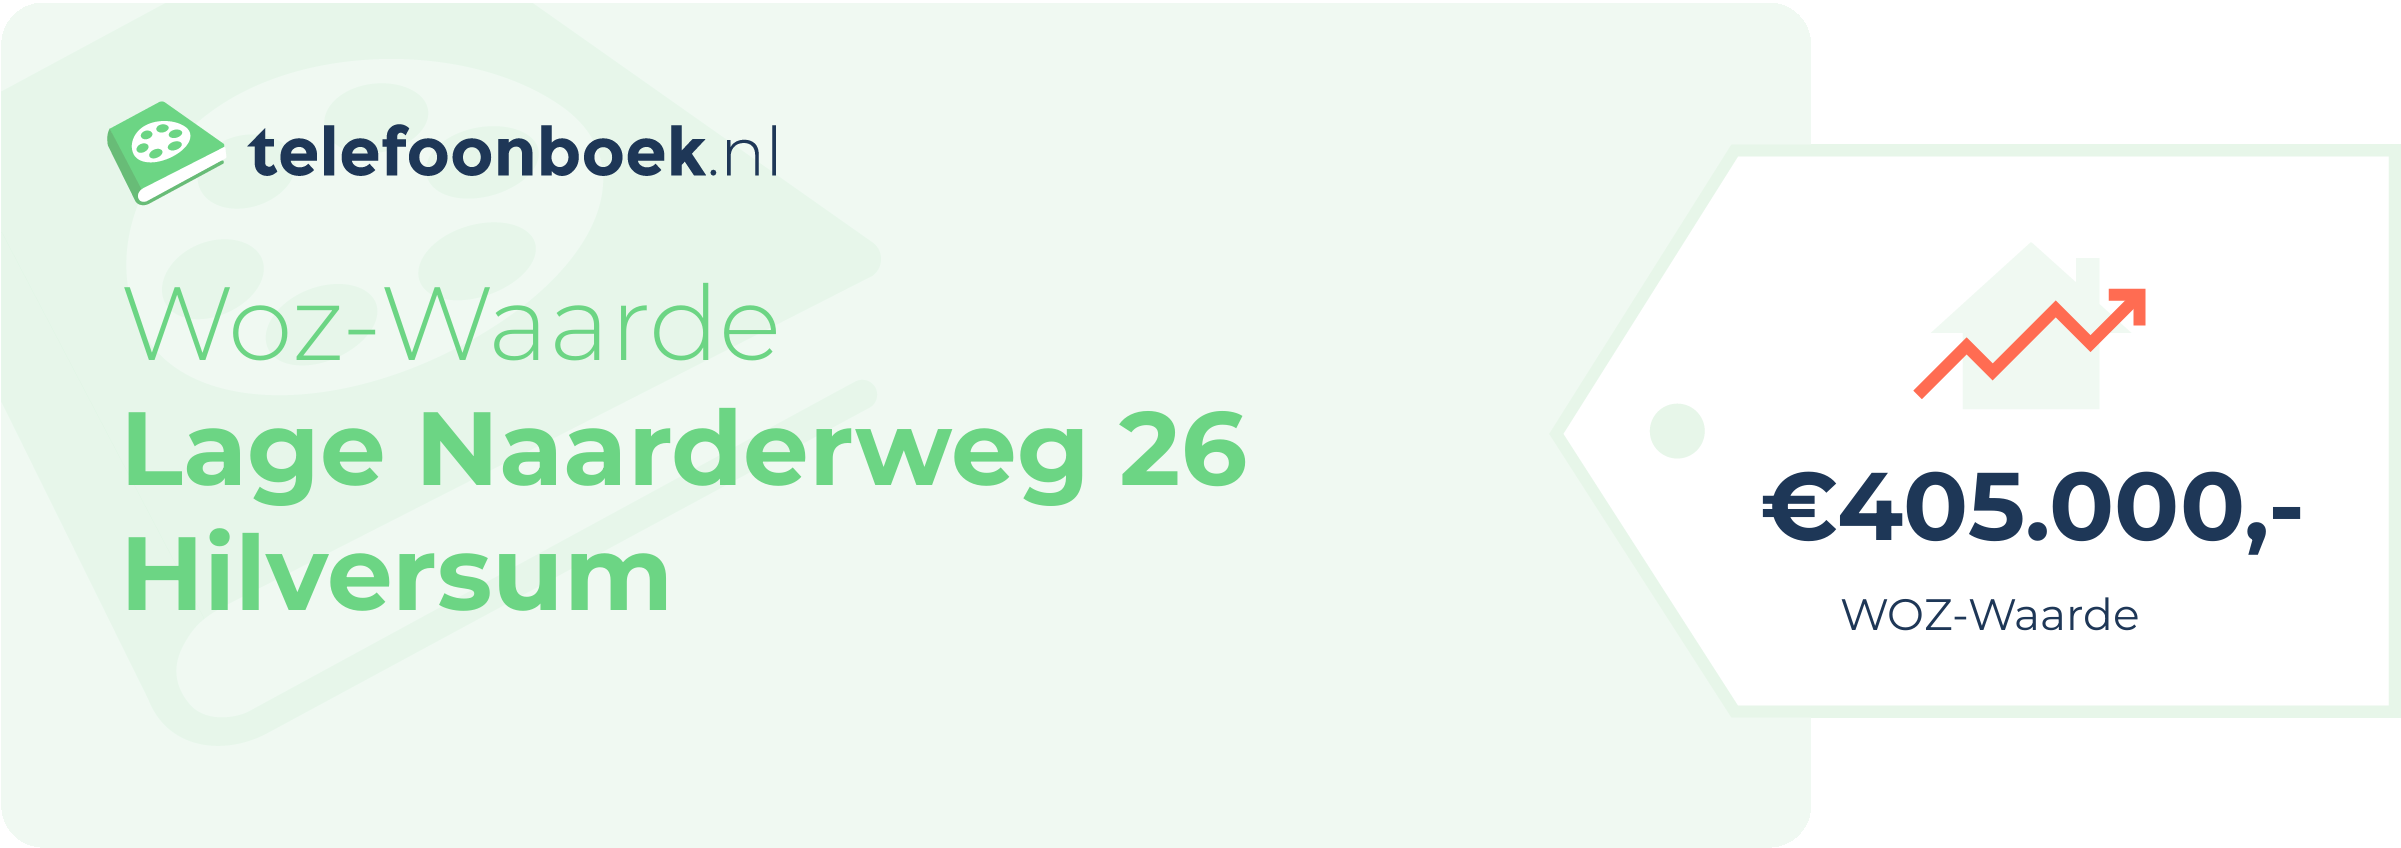 WOZ-waarde Lage Naarderweg 26 Hilversum